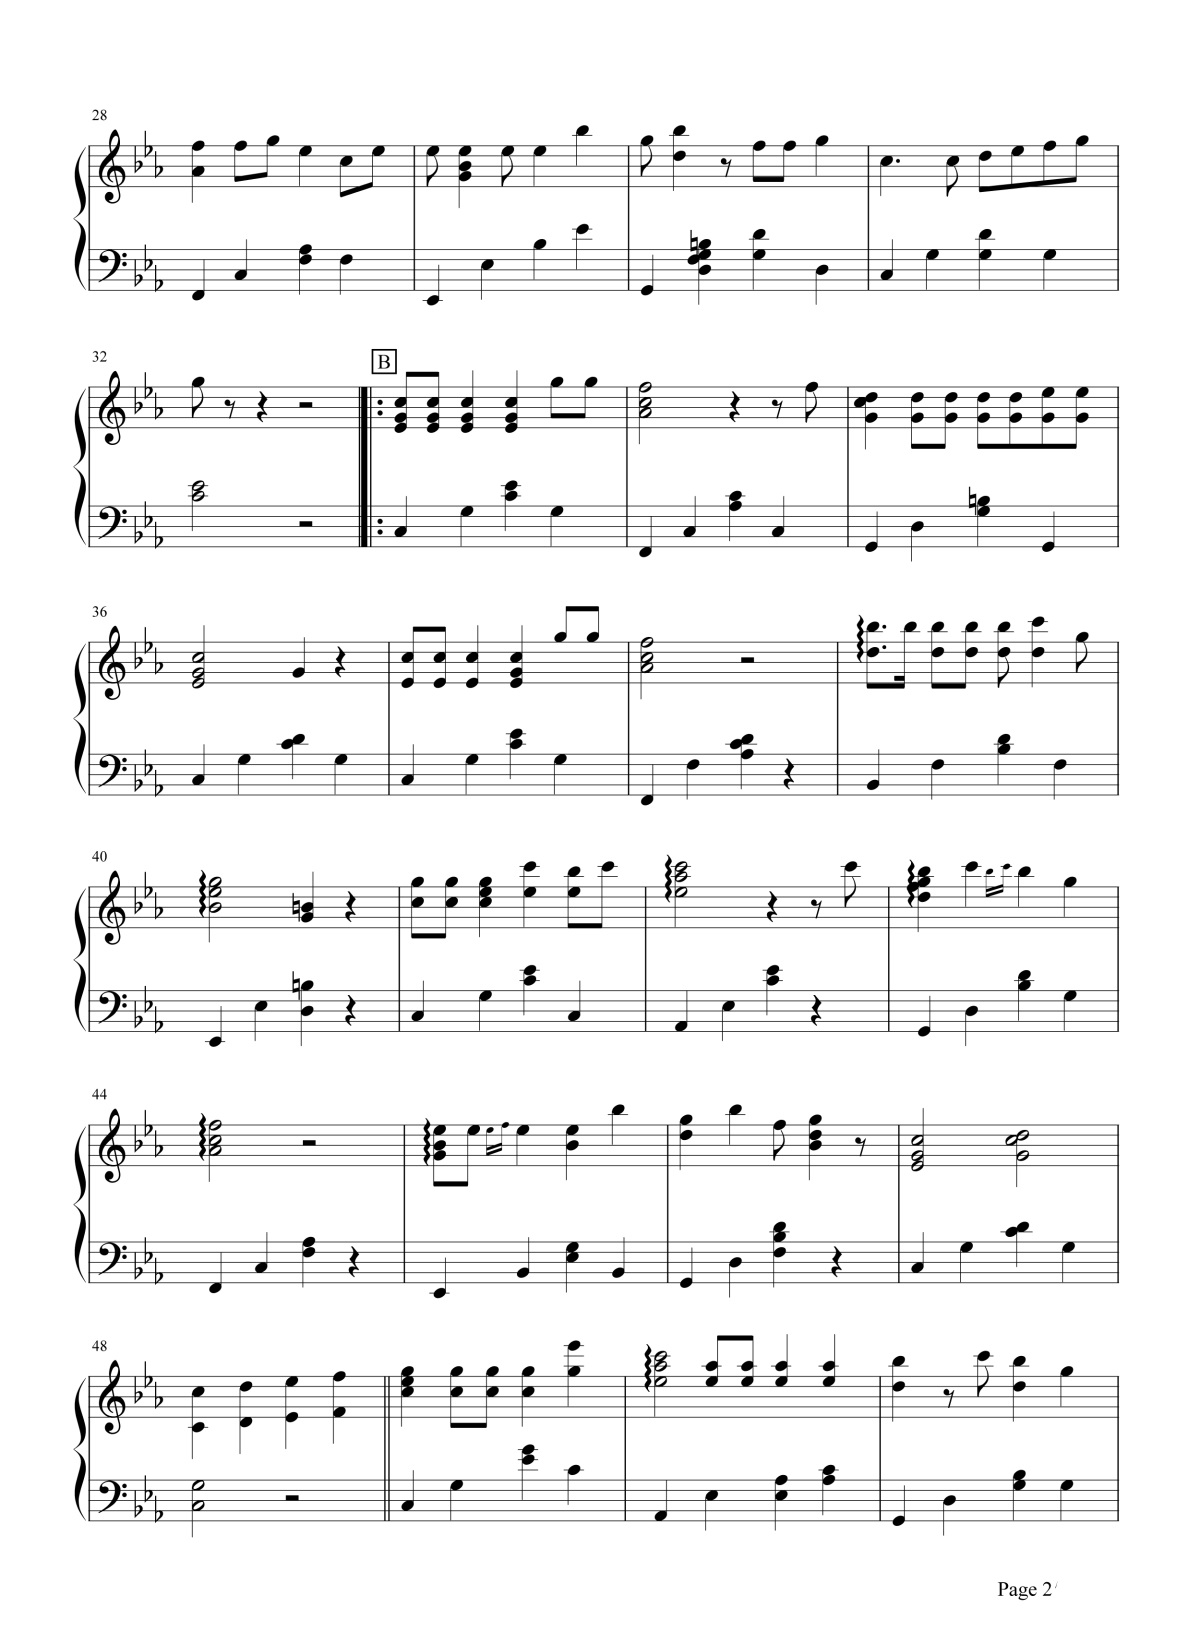 【梦中的额吉】的钢琴谱简谱 – 乌达木
